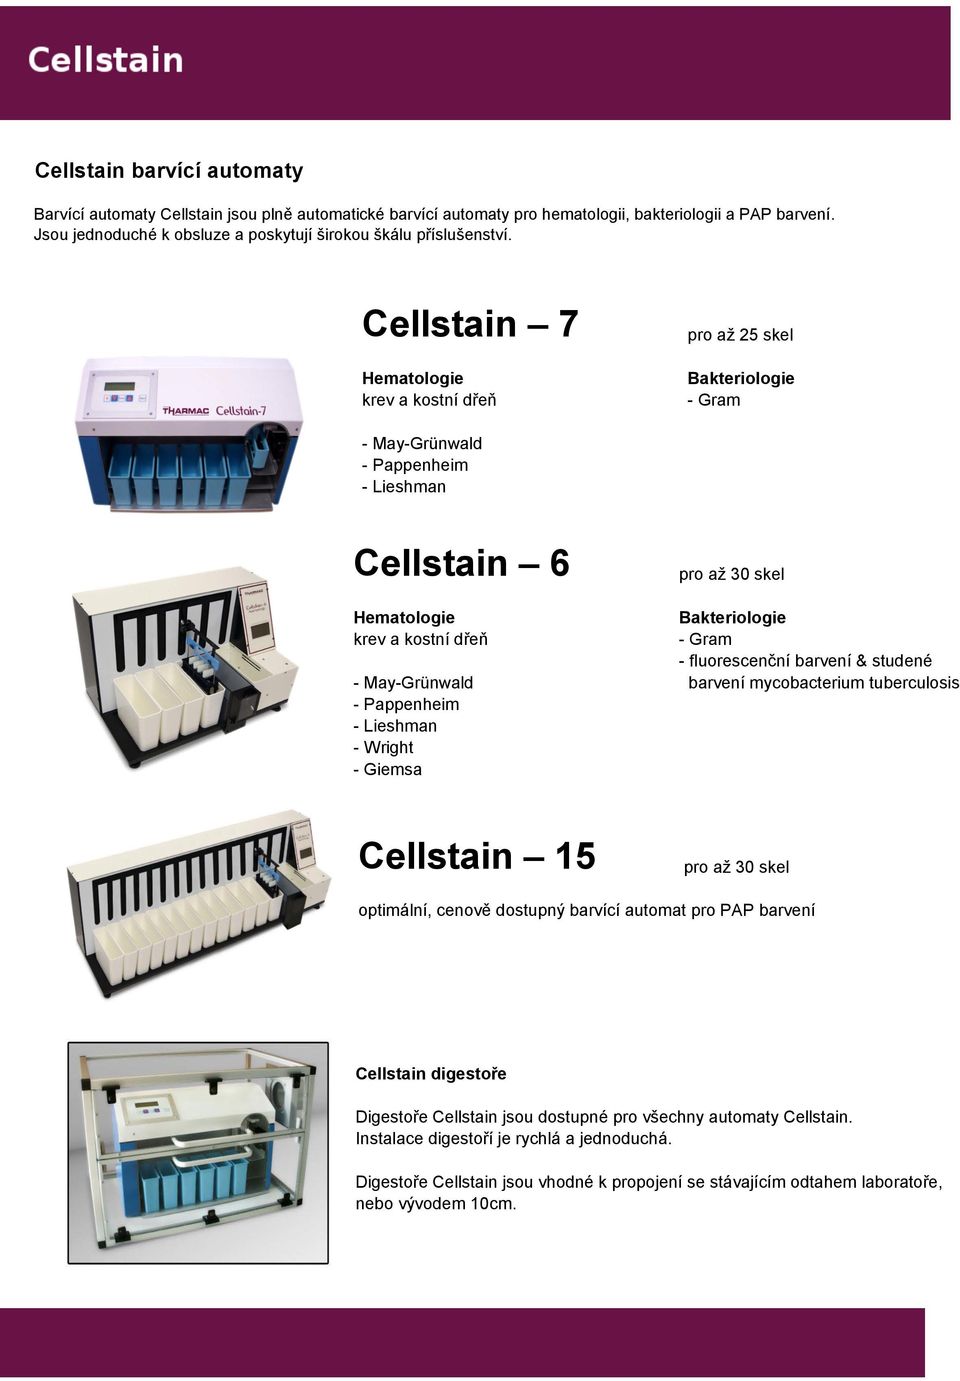 Cellstain 7 pro až 25 skel Hematologie krev a kostní dřeň Bakteriologie - Gram - May-Grünwald - Pappenheim - Lieshman Cellstain 6 Hematologie krev a kostní dřeň - May-Grünwald - Pappenheim - Lieshman